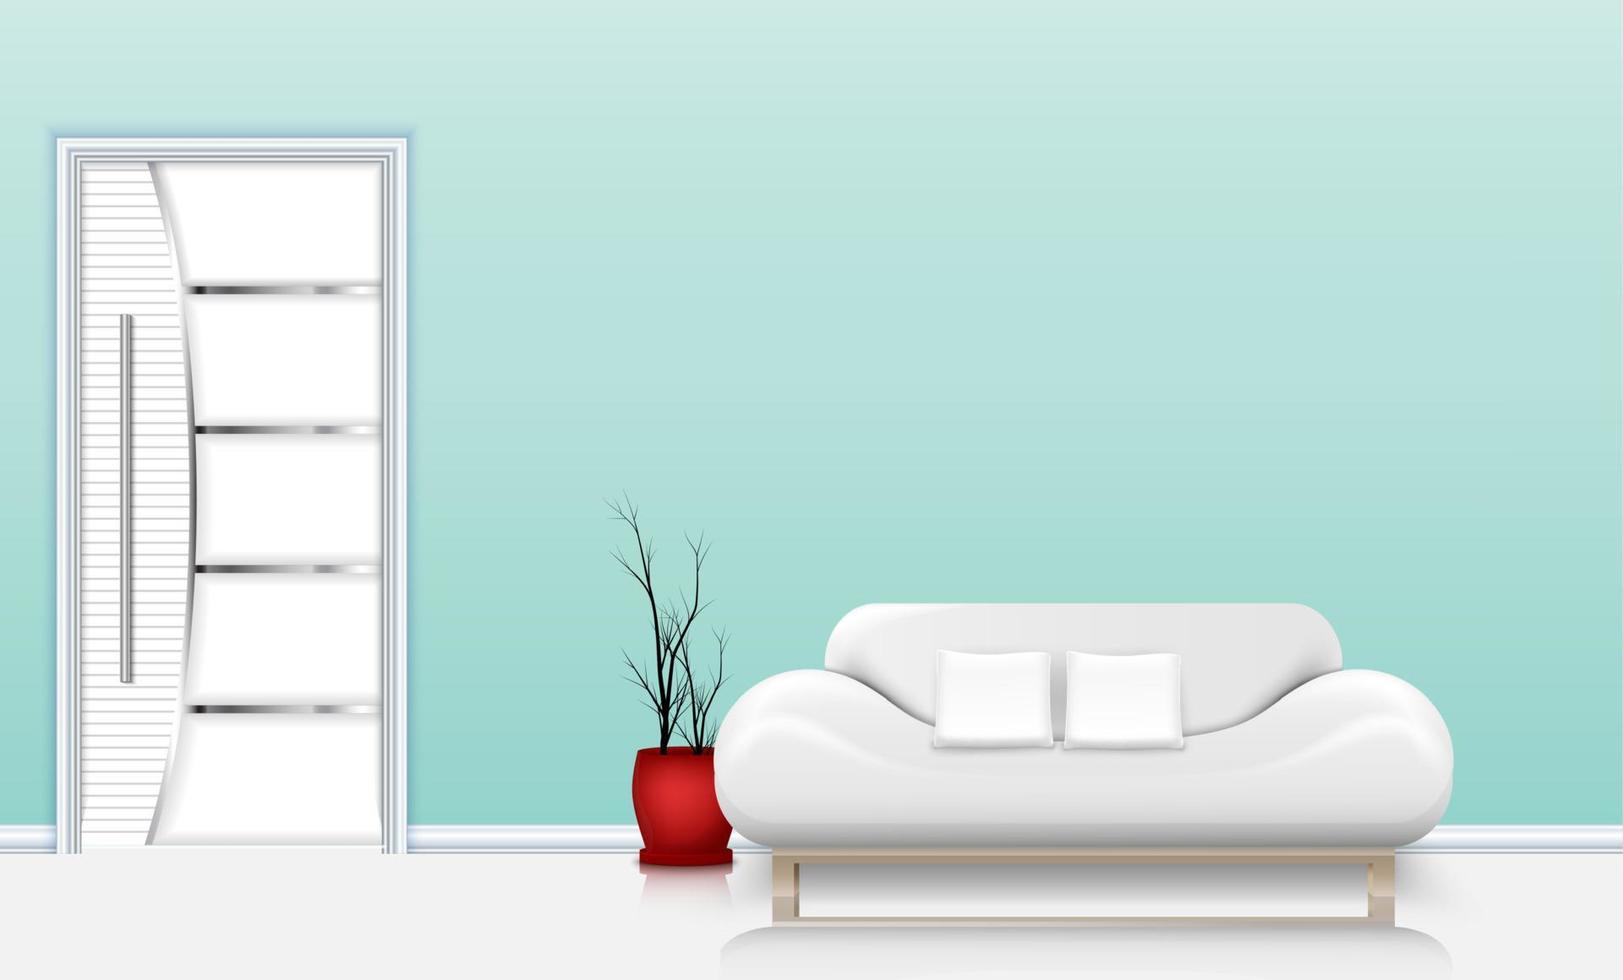 ilustração vetorial do interior da sala de estar com um sofá e almofadas brancas vetor